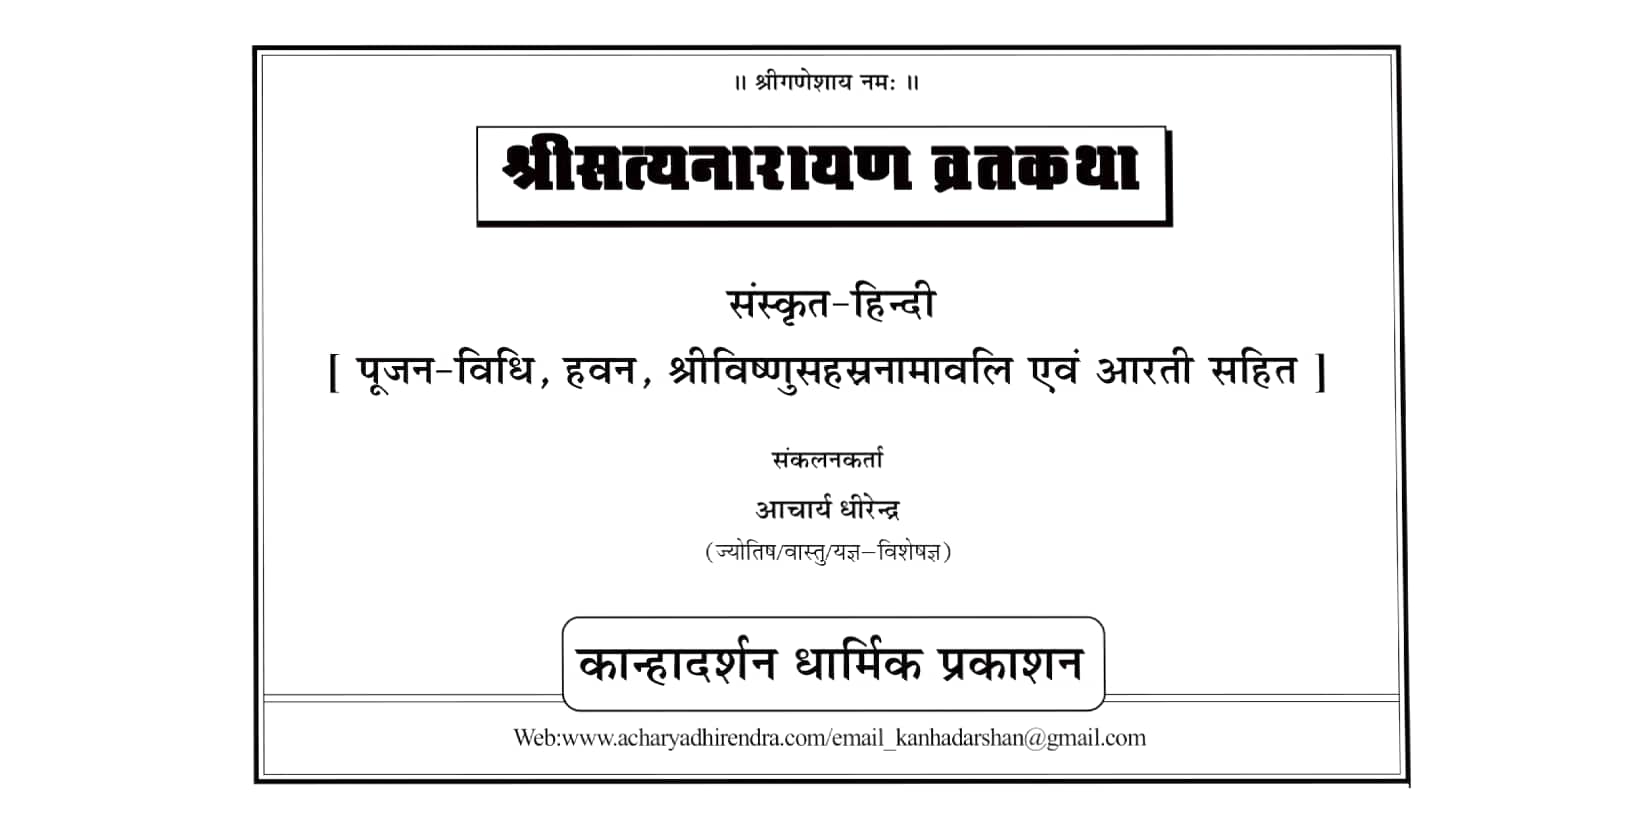 Shri-Satya-Narayan-Vrat-Katha-Sanskrit-Hindi-Book-PDF